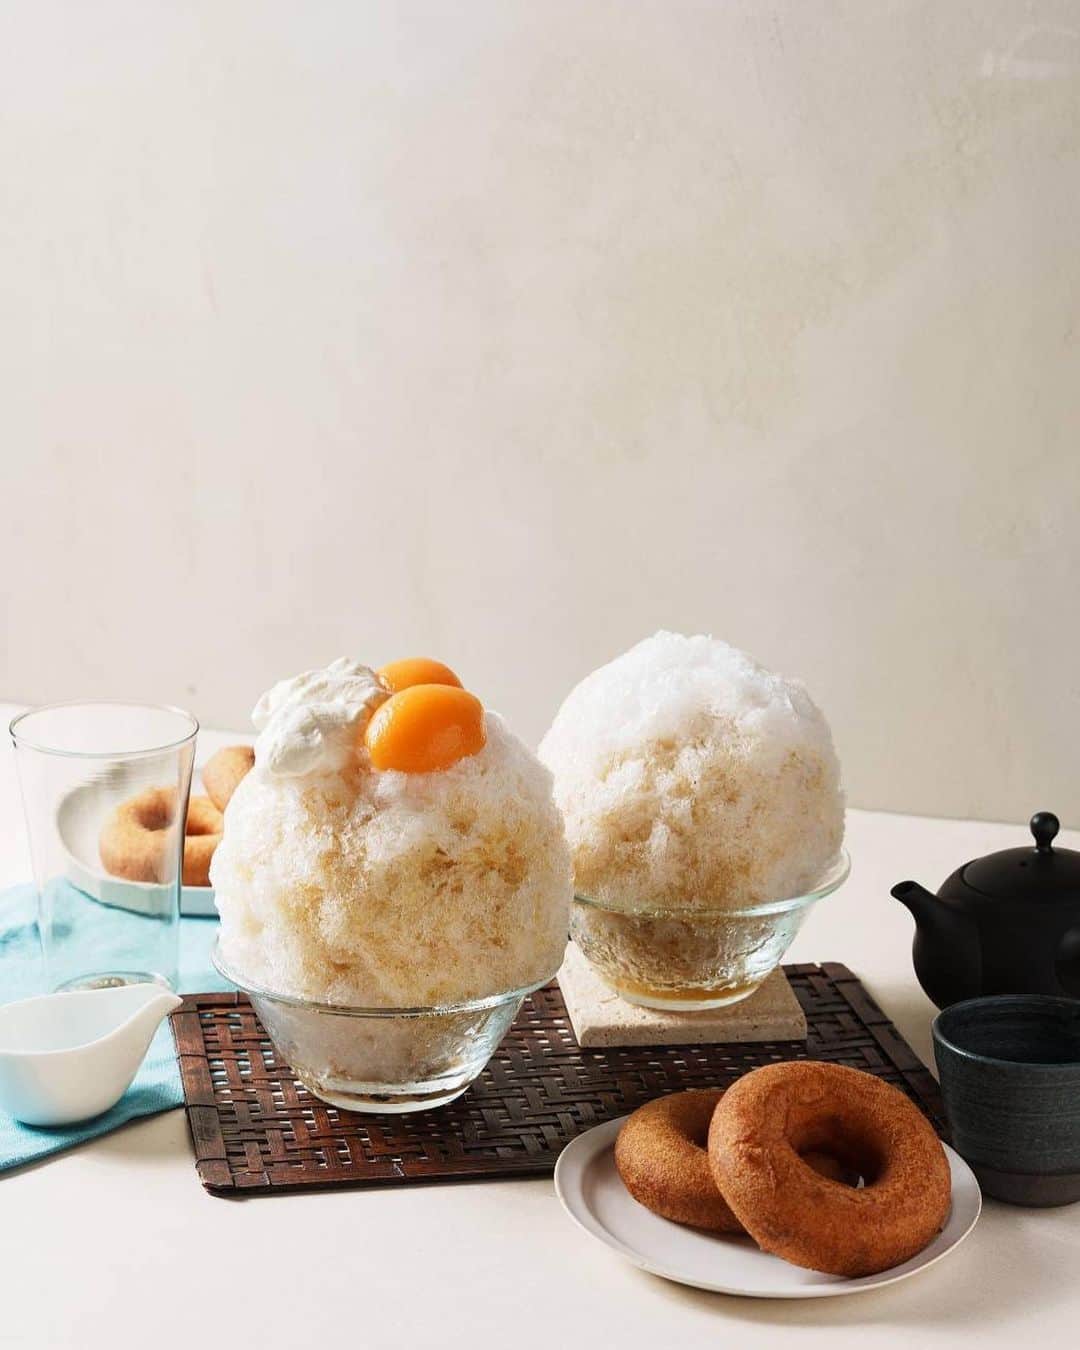 原田麻子さんのインスタグラム写真 - (原田麻子Instagram)「今年もkoe donuts @koe_donuts  さんのかき氷を監修させていただく運びとなりました。  京都らしさに加えてmamatokoらしいエッセンスを加えました！  今年は平日ですが、8月に私も店頭にて削るイベントデーも予定しています！またお知らせします。  ↓  オーガニック、天然由来、地産地消、をキーワードに、季節に合わせたシーズンメニューを販売しています。毎年夏シーズンには、かき氷専門店「氷舎 mamatoko」を手掛ける、“かき氷の女王”原田麻子氏とコラボレーションした『京かき氷』を提供しております。  今夏は、“ドーナツにも合う”かき氷メニューを開発し、第1弾は『お茶』 をテーマとした2種類のフレーバーをご用意。芳醇で焙煎香の強い京番茶のシロップを使用したかき氷は、中に自家製コーヒー餡を忍ばせました。コーヒー餡にはオーガニック認証を受けた最高級のアラビカ豆のみを使ったフェアトレードのコーヒーを使用し、京都老舗製餡所の赤こし餡と組み合わせました。お茶の香ばしさとコーヒー餡のほろ苦さが絶妙にマッチし、あっさりと食べられるかき氷です。  ジャスミン茶の自家製シロップを使用したかき氷は、豆腐の優しい風味が広がるクリームと肉厚でジューシーなびわのコンポートをトッピング。底に香りと辛味を上品に残した無農薬生姜の自家製コンフィチュールをプラスし、オリエンタルな雰囲気を楽しめるかき氷に仕上げました。  ドーナツショップが手掛ける、爽やかな味わいの京かき氷をぜひkoe donutsにてご賞味ください。  ■『京かき氷 第1弾』販売概要 発売日：6月15日（木） 販売時間：11:00～20:00 （l.o.19:30） ※イートイン限定 販売種類：かき氷 2種  京番茶とコーヒー餡 価格：￥1,100 （京番茶シロップ、コーヒー餡） 芳醇で焙煎香の強い京番茶のシロップをかけて、中にはフェアトレードコーヒーと赤こし餡の自家製コーヒー餡を忍ばせました。 お茶の香ばしさとコーヒー餡のほろ苦さが優しくマッチした京かき氷です。  びわとジャスミン茶　お豆腐クリーム 価格：￥1,500 （ジャスミン茶シロップ、お豆腐クリーム、びわのコンポート、生姜のコンフィチュール） ジャスミン茶の自家製シロップに、優しい風味のお豆腐クリームと、ジューシーなびわの自家製コンポートをトッピング。 底には無農薬生姜の自家製コンフィチュールを入れた、オリエンタルな特製かき氷です。」6月11日 11時53分 - achakoko